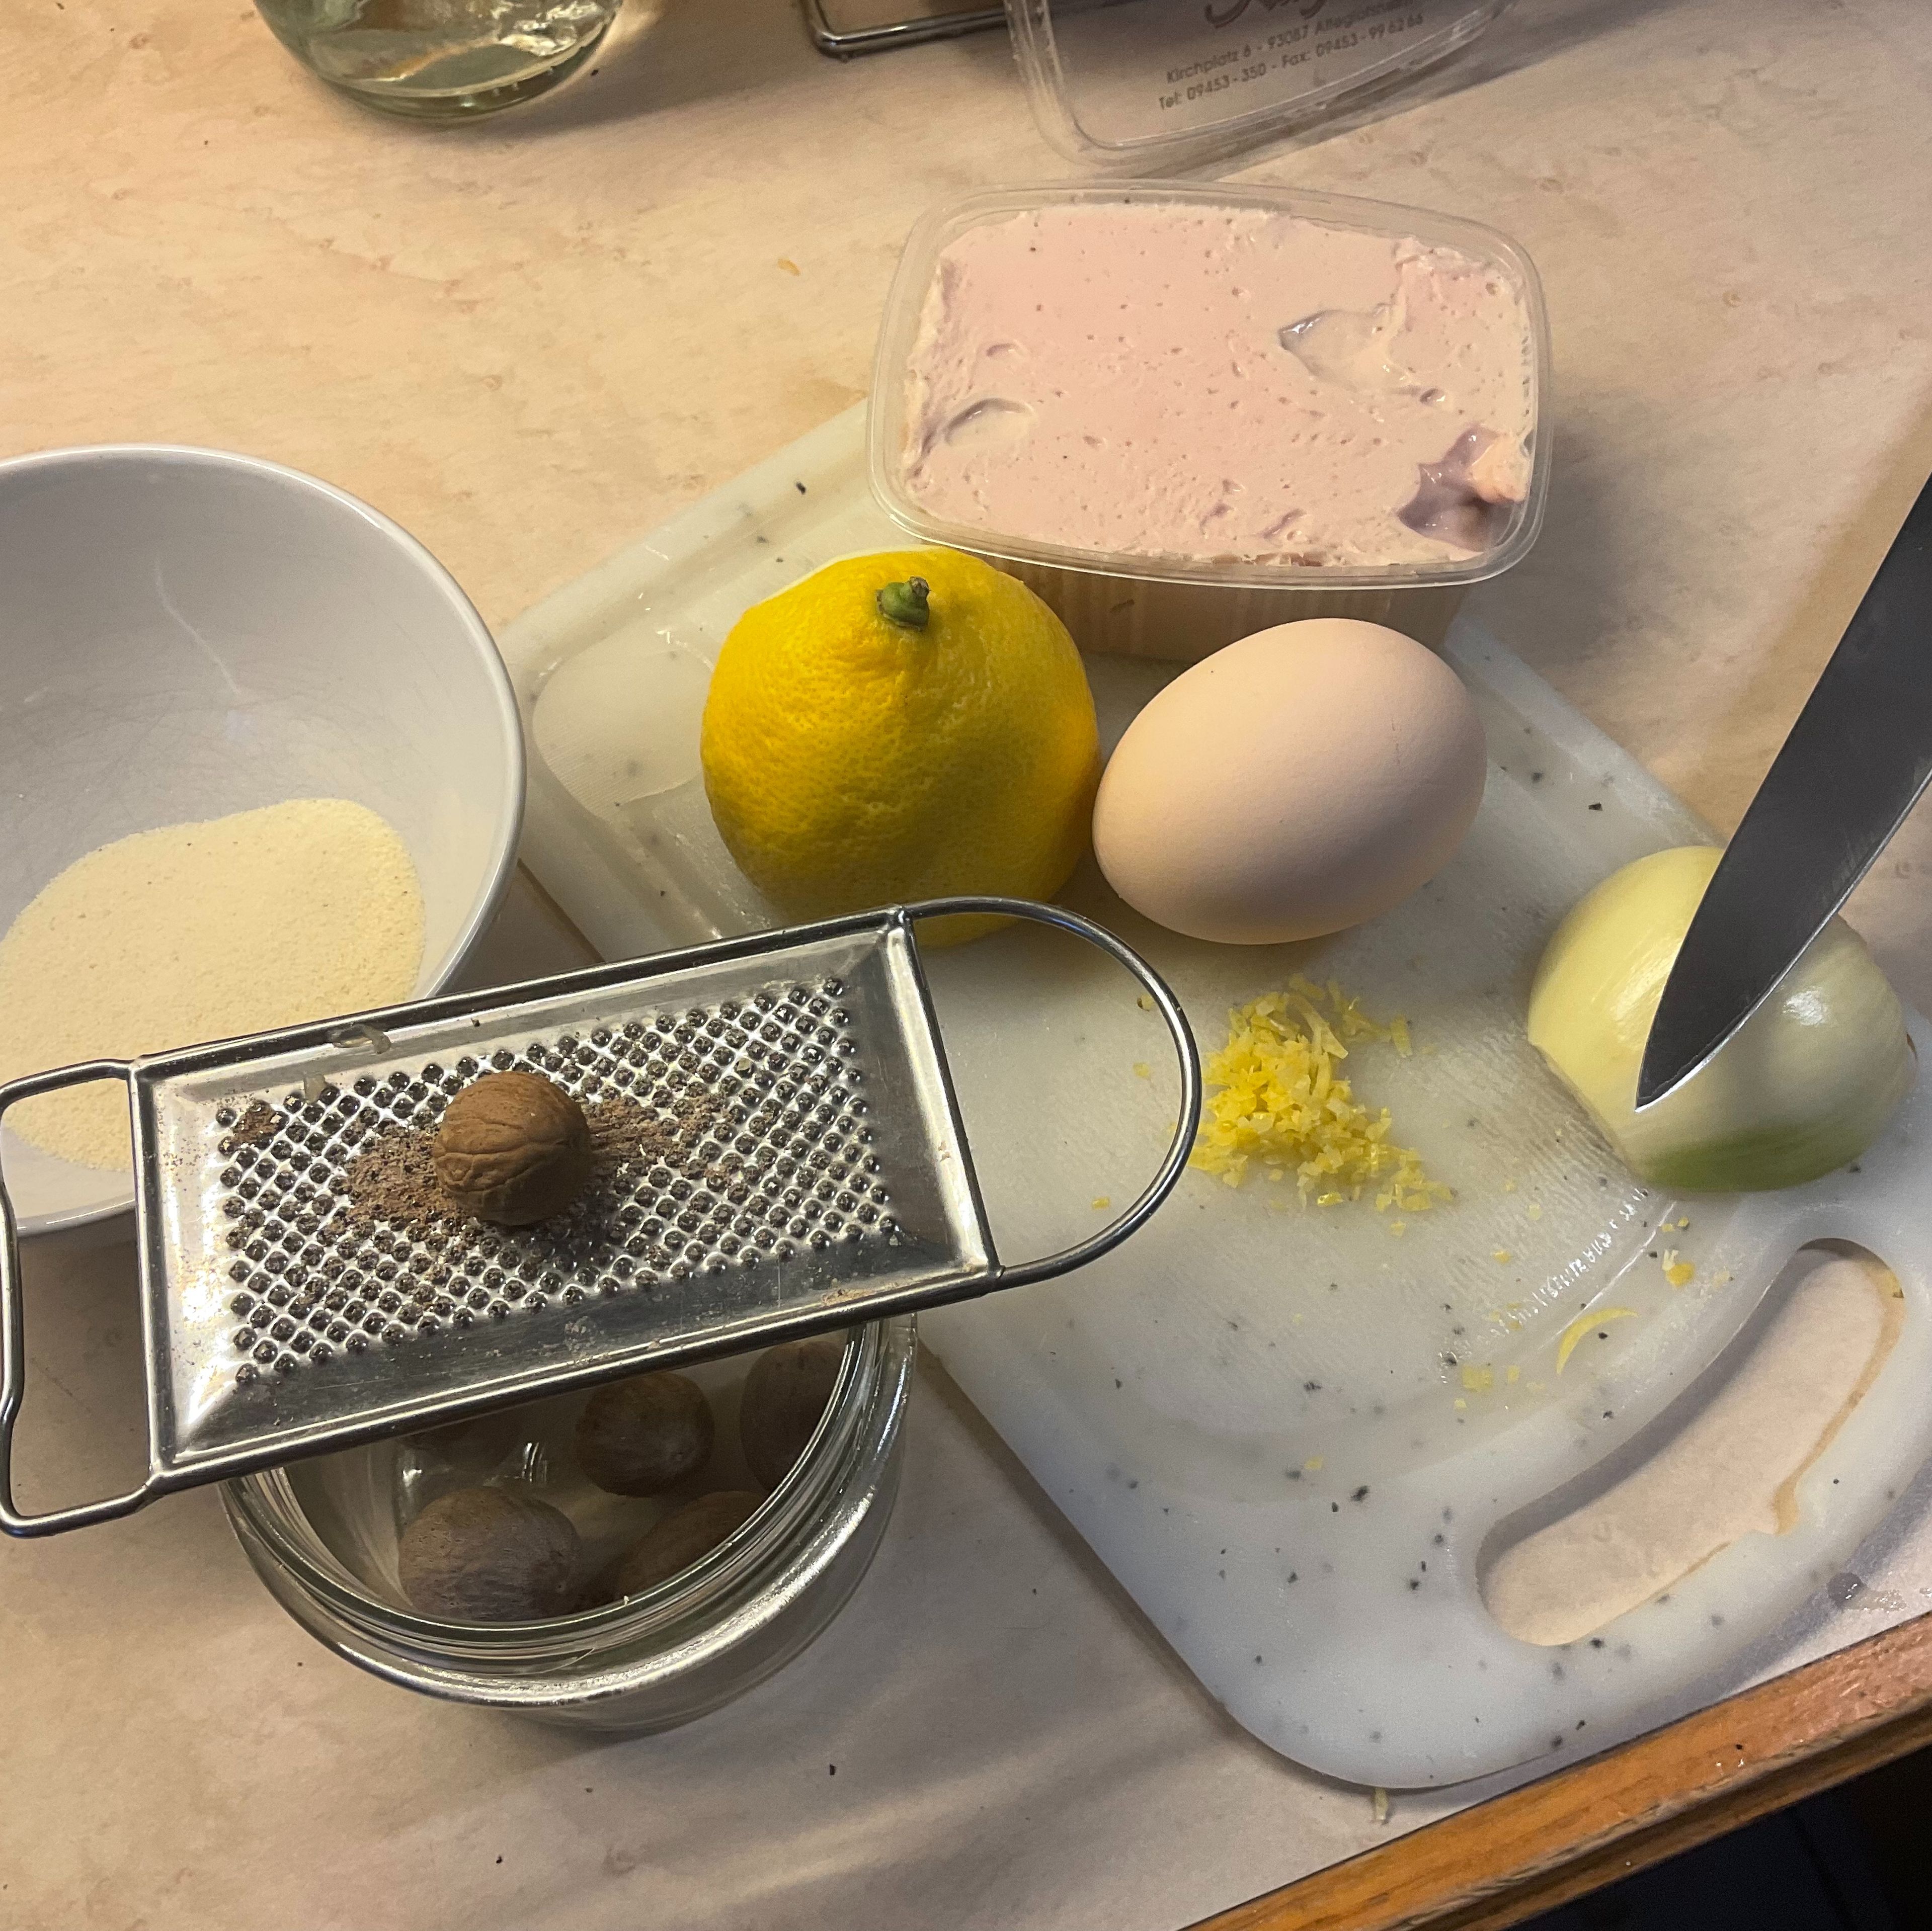 Dann richte ich alles für die Brätknödel her. Das Kalbsbrät, ca 2 Schnitzer unbehandelte Zitronenzeste feinst geschnitten, bzw. Zitronenabrieb, ein Ei, eine halbe Zwiebel, Muskatnuss mit Reibe und ca. 15 g feinen Gries.